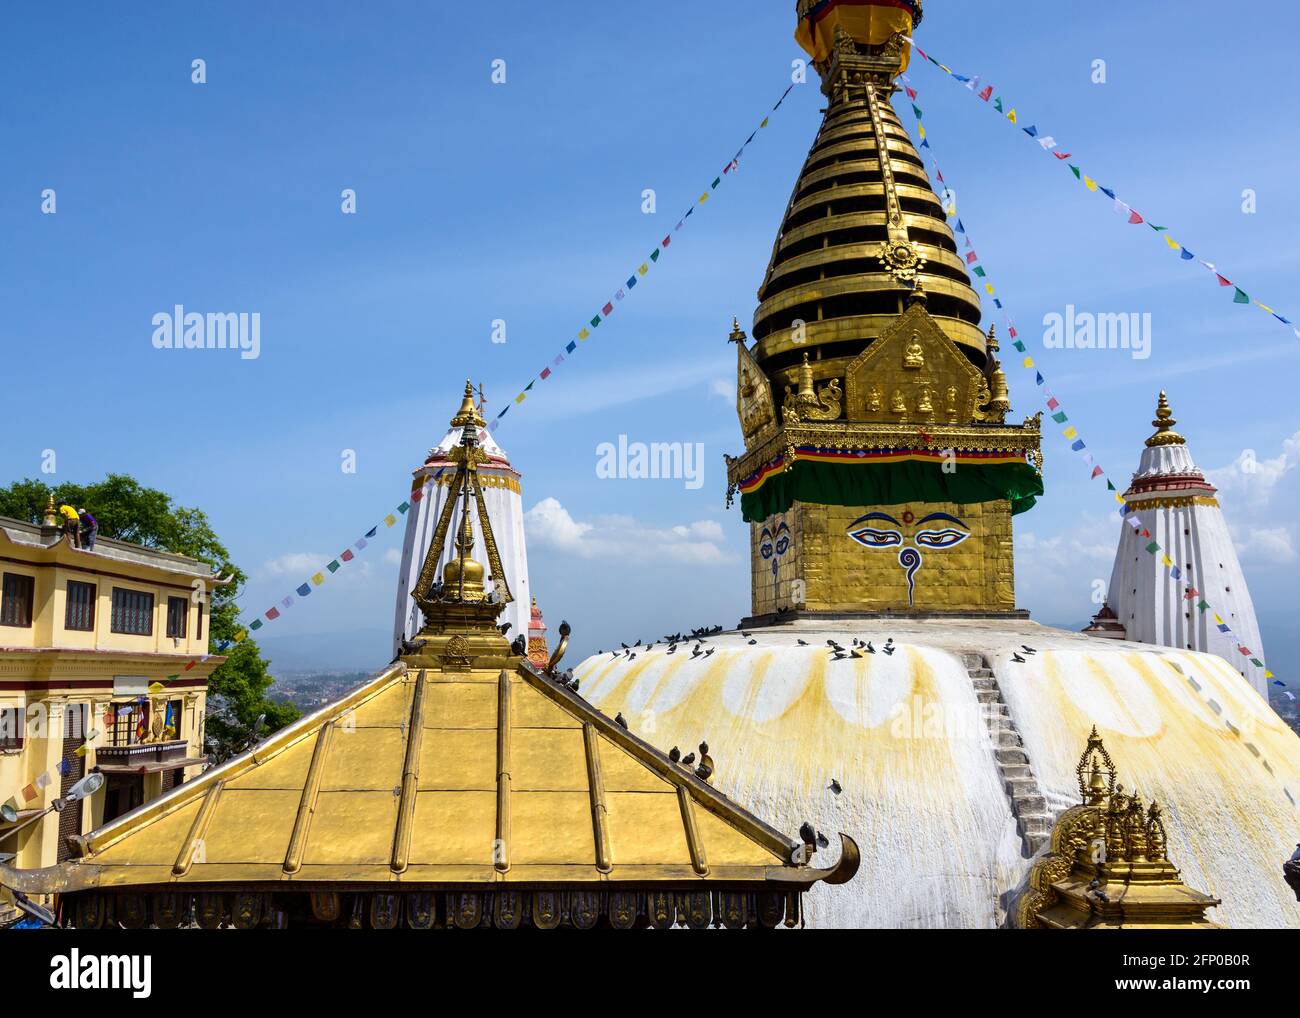 Swayambhunath stupa in Kathmandu, Nepal Stock Photo